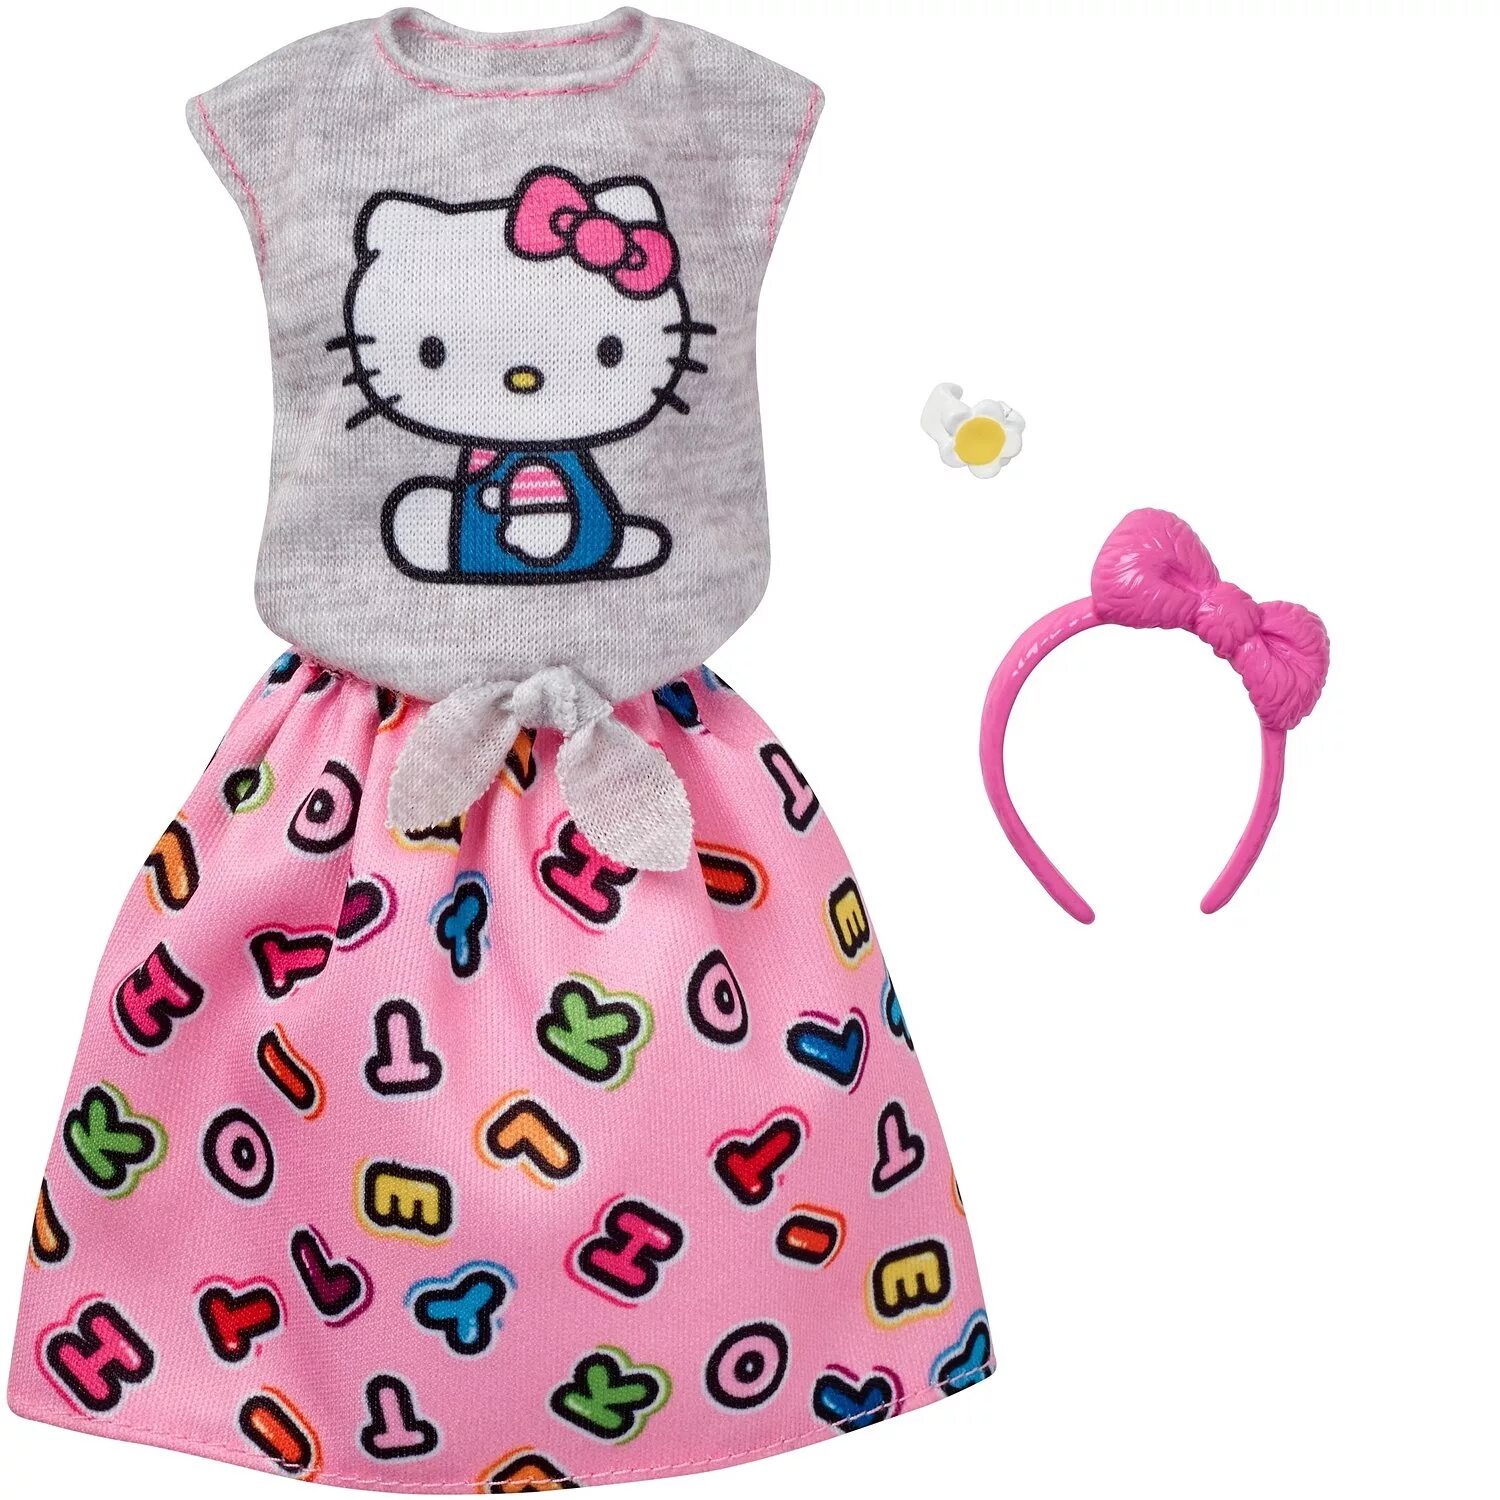 Одежда для Барби Хелло Китти. Хэллоу Китти Барби одежда. Одежда для кукол Барби Хелло Китти. Одежда для Барби hello Kitty одежда. Хэллоу одежда